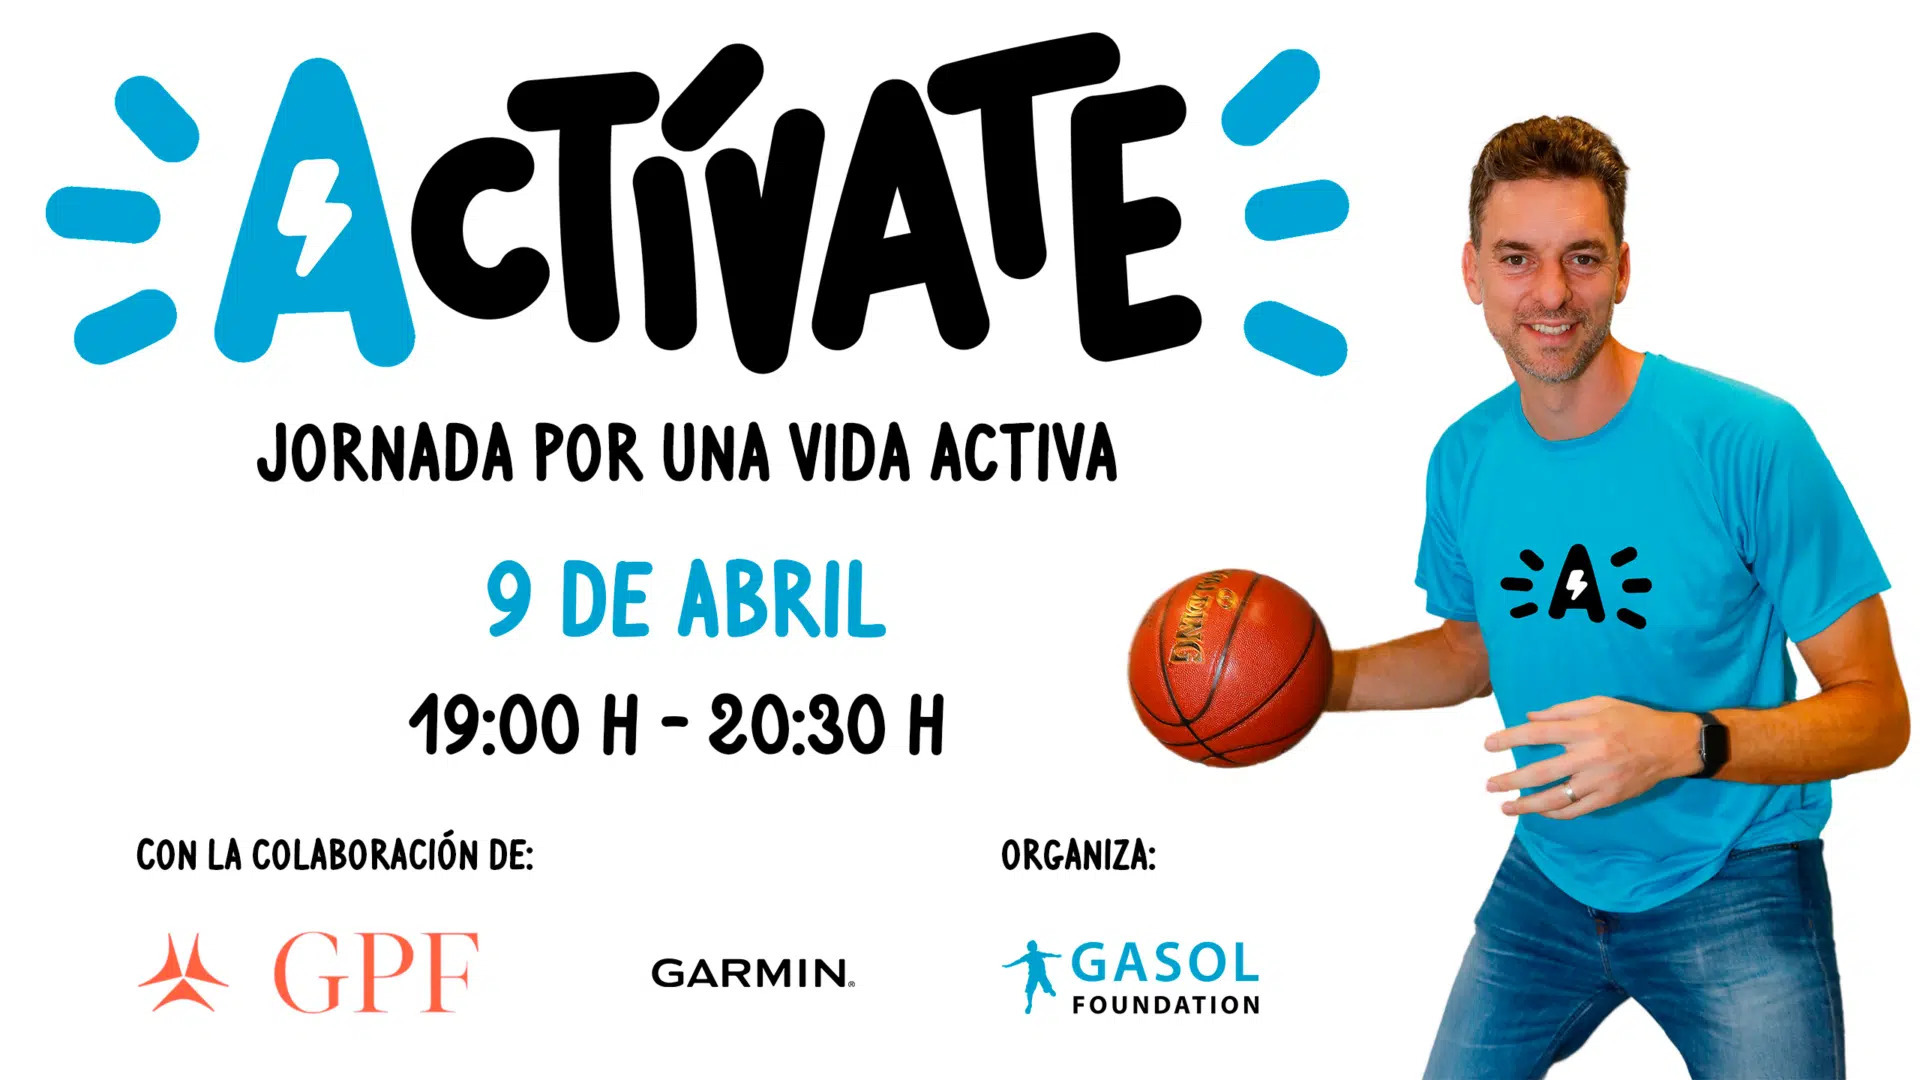 La Gasol Foundation organiza el 9 de abril la Jornada Actvate